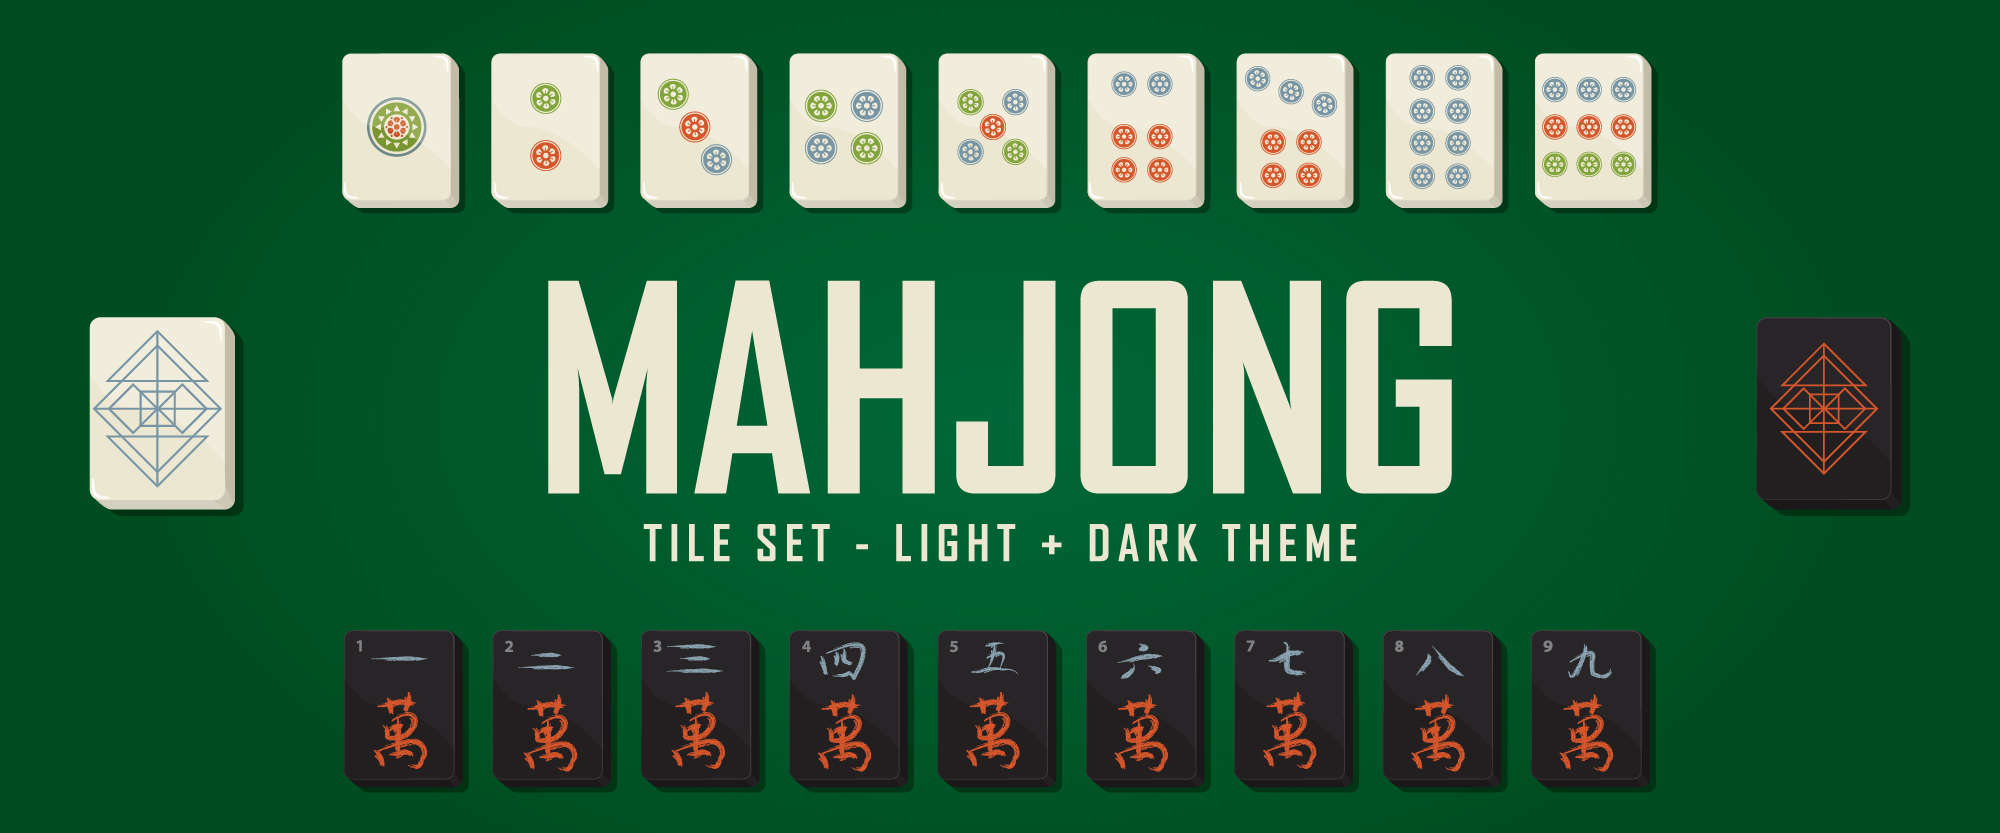 Mahjong Tile Set